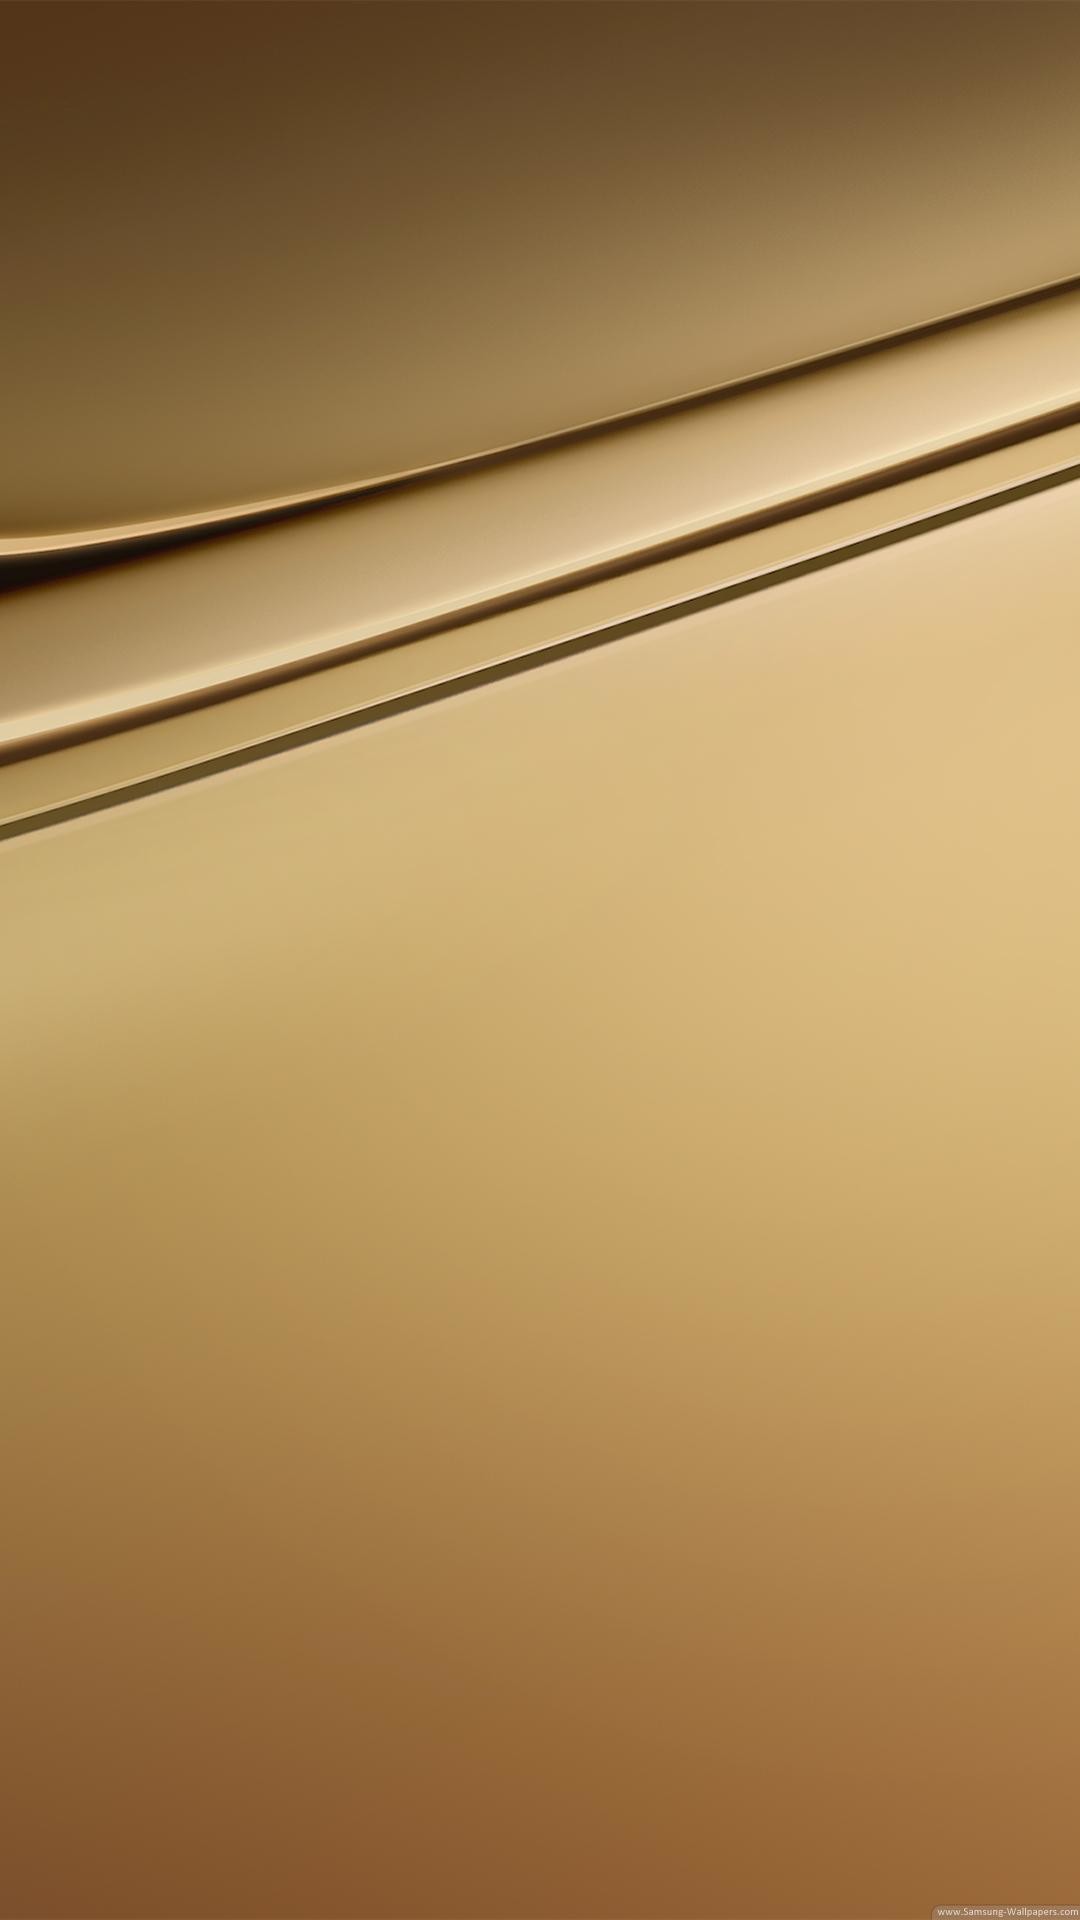 1080x1920, Gold Color Wallpaper Hd - Samsung C7 Wallpaper Hd - 1080x1920  Wallpaper 